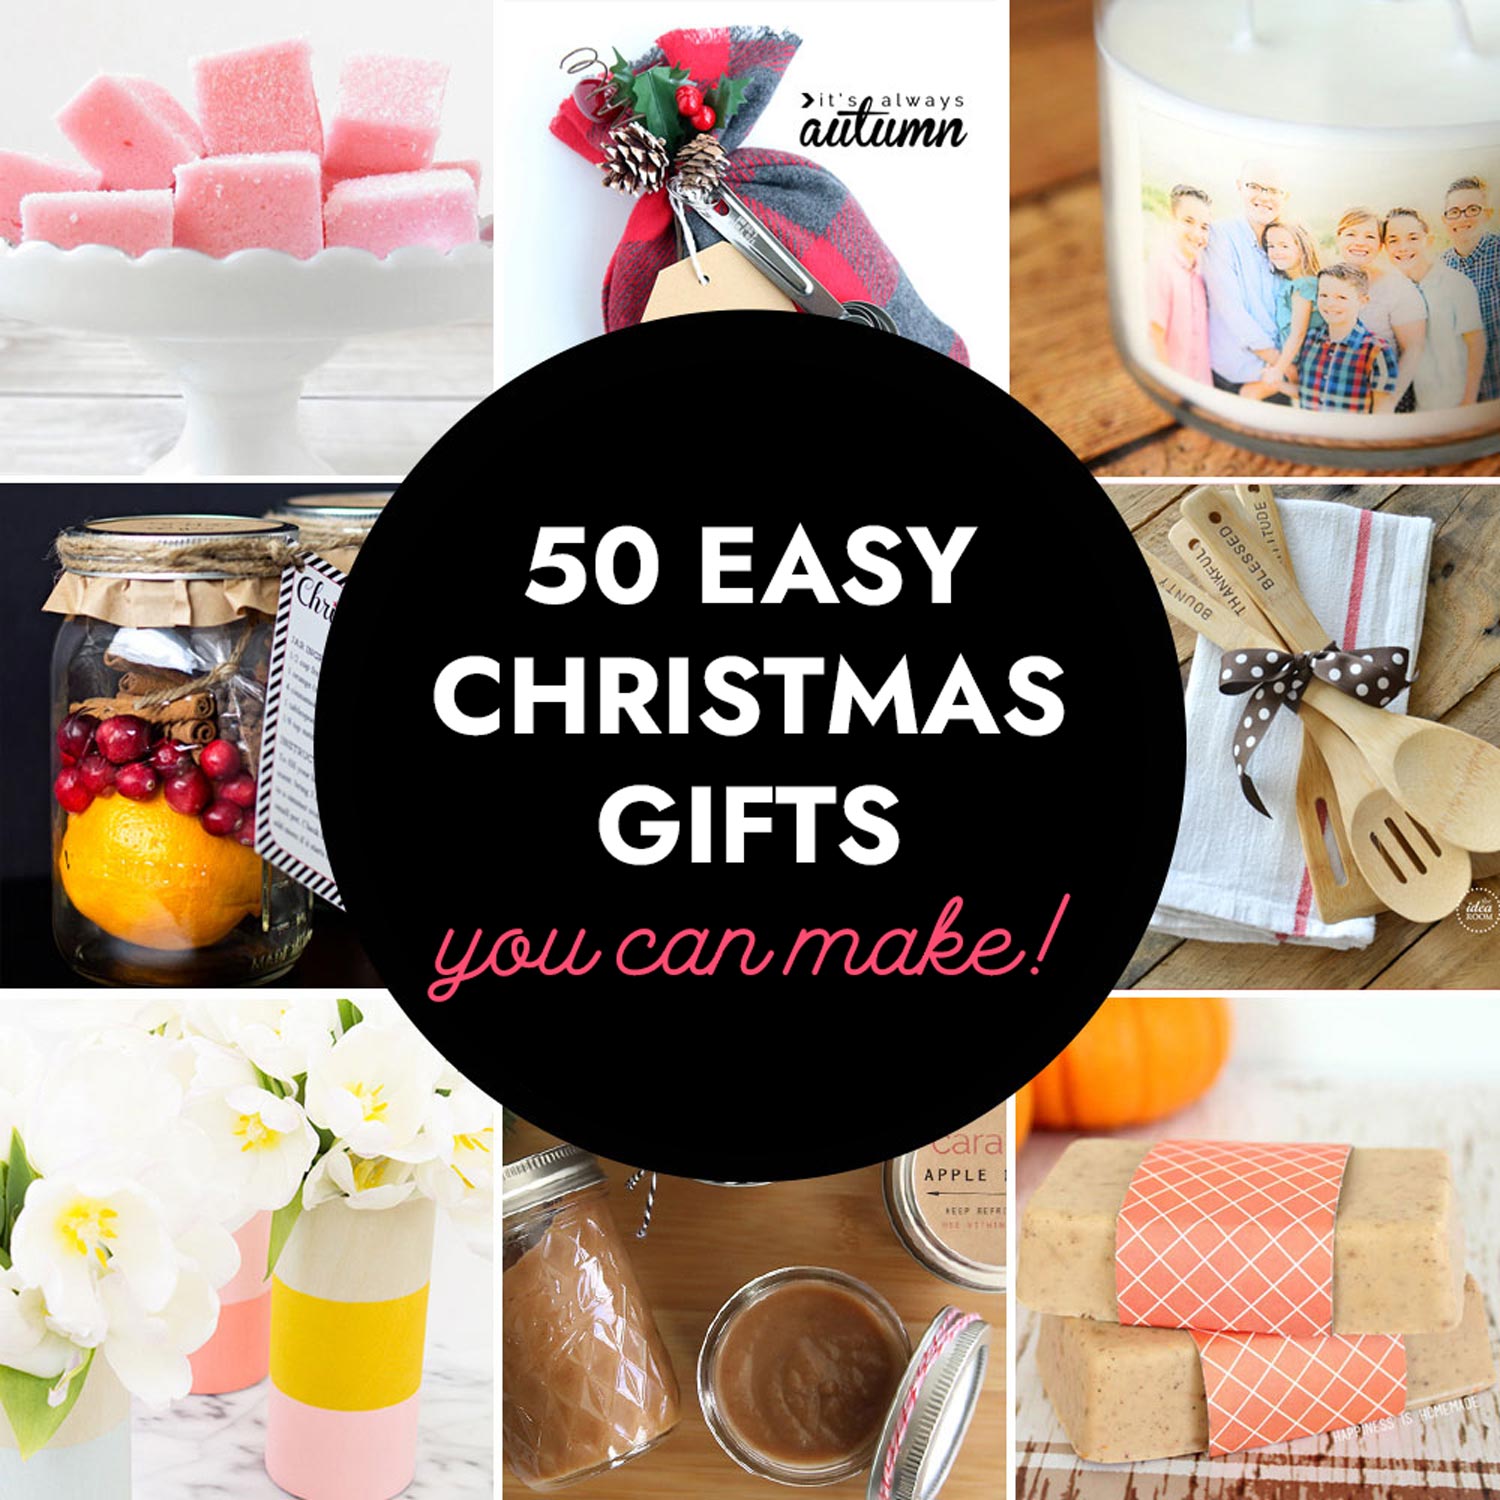 12 Easy DIY Christmas Gift Ideas | Avery.com